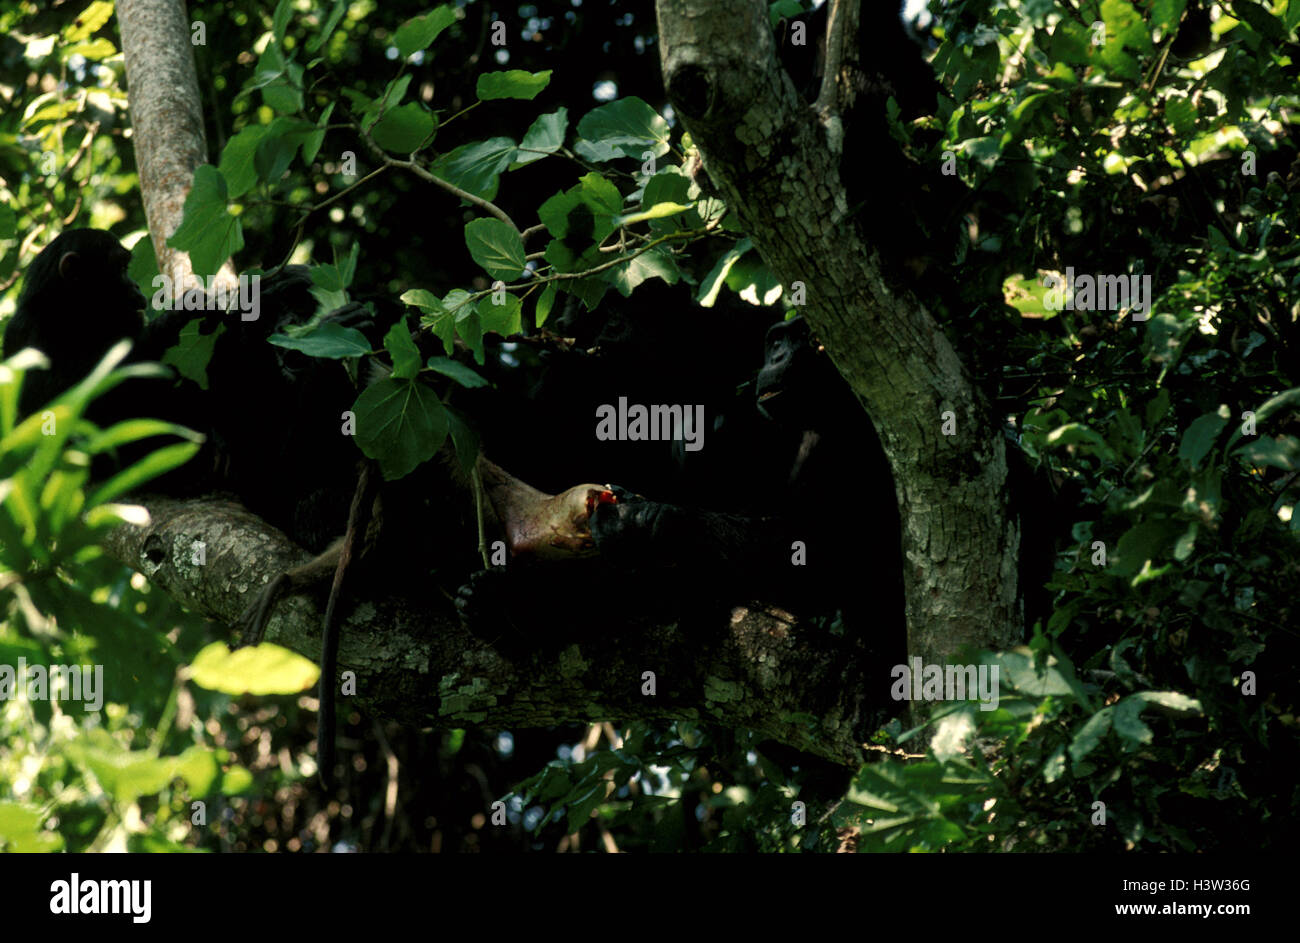 Common chimpanzees (Pan troglodytes schweinfurthii) Stock Photo